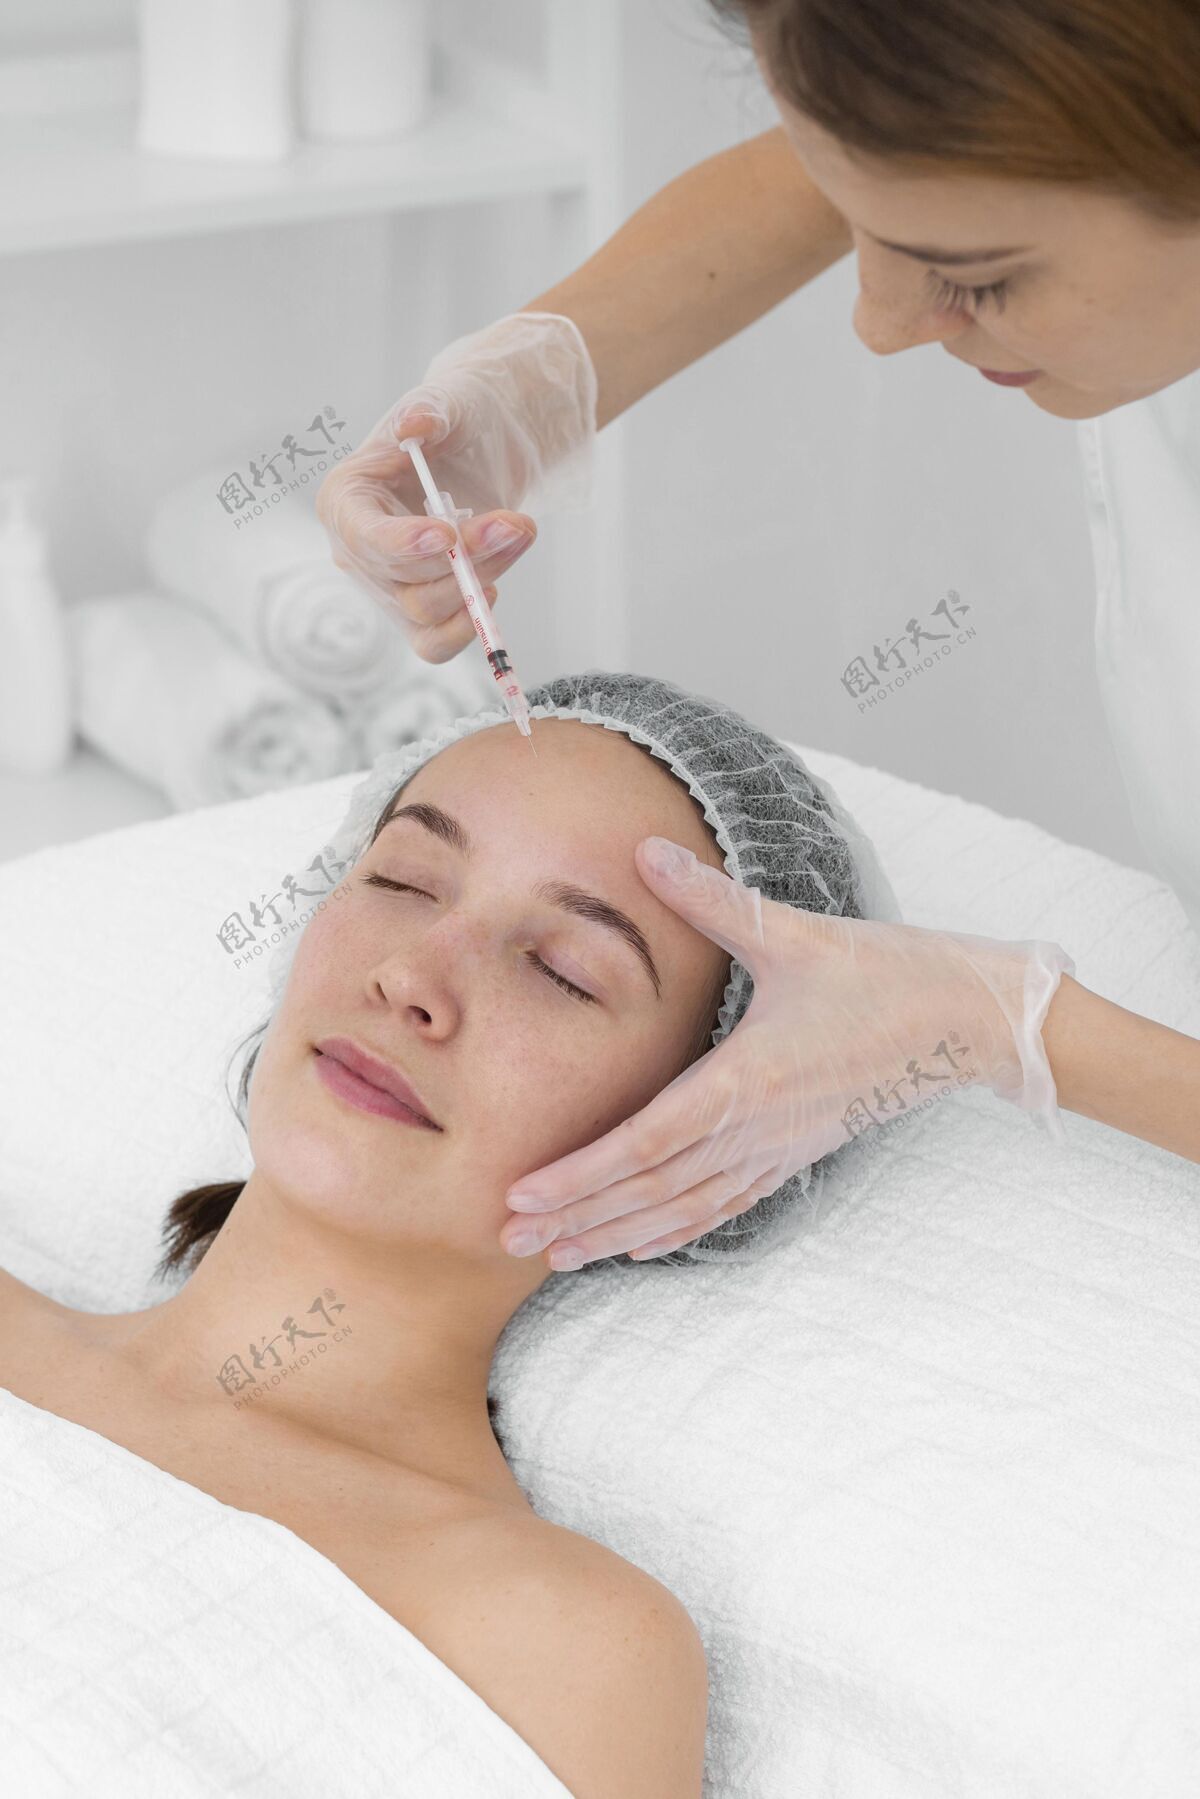 注射美容师在给女性客户注射填充物化妆品美容治疗美容治疗